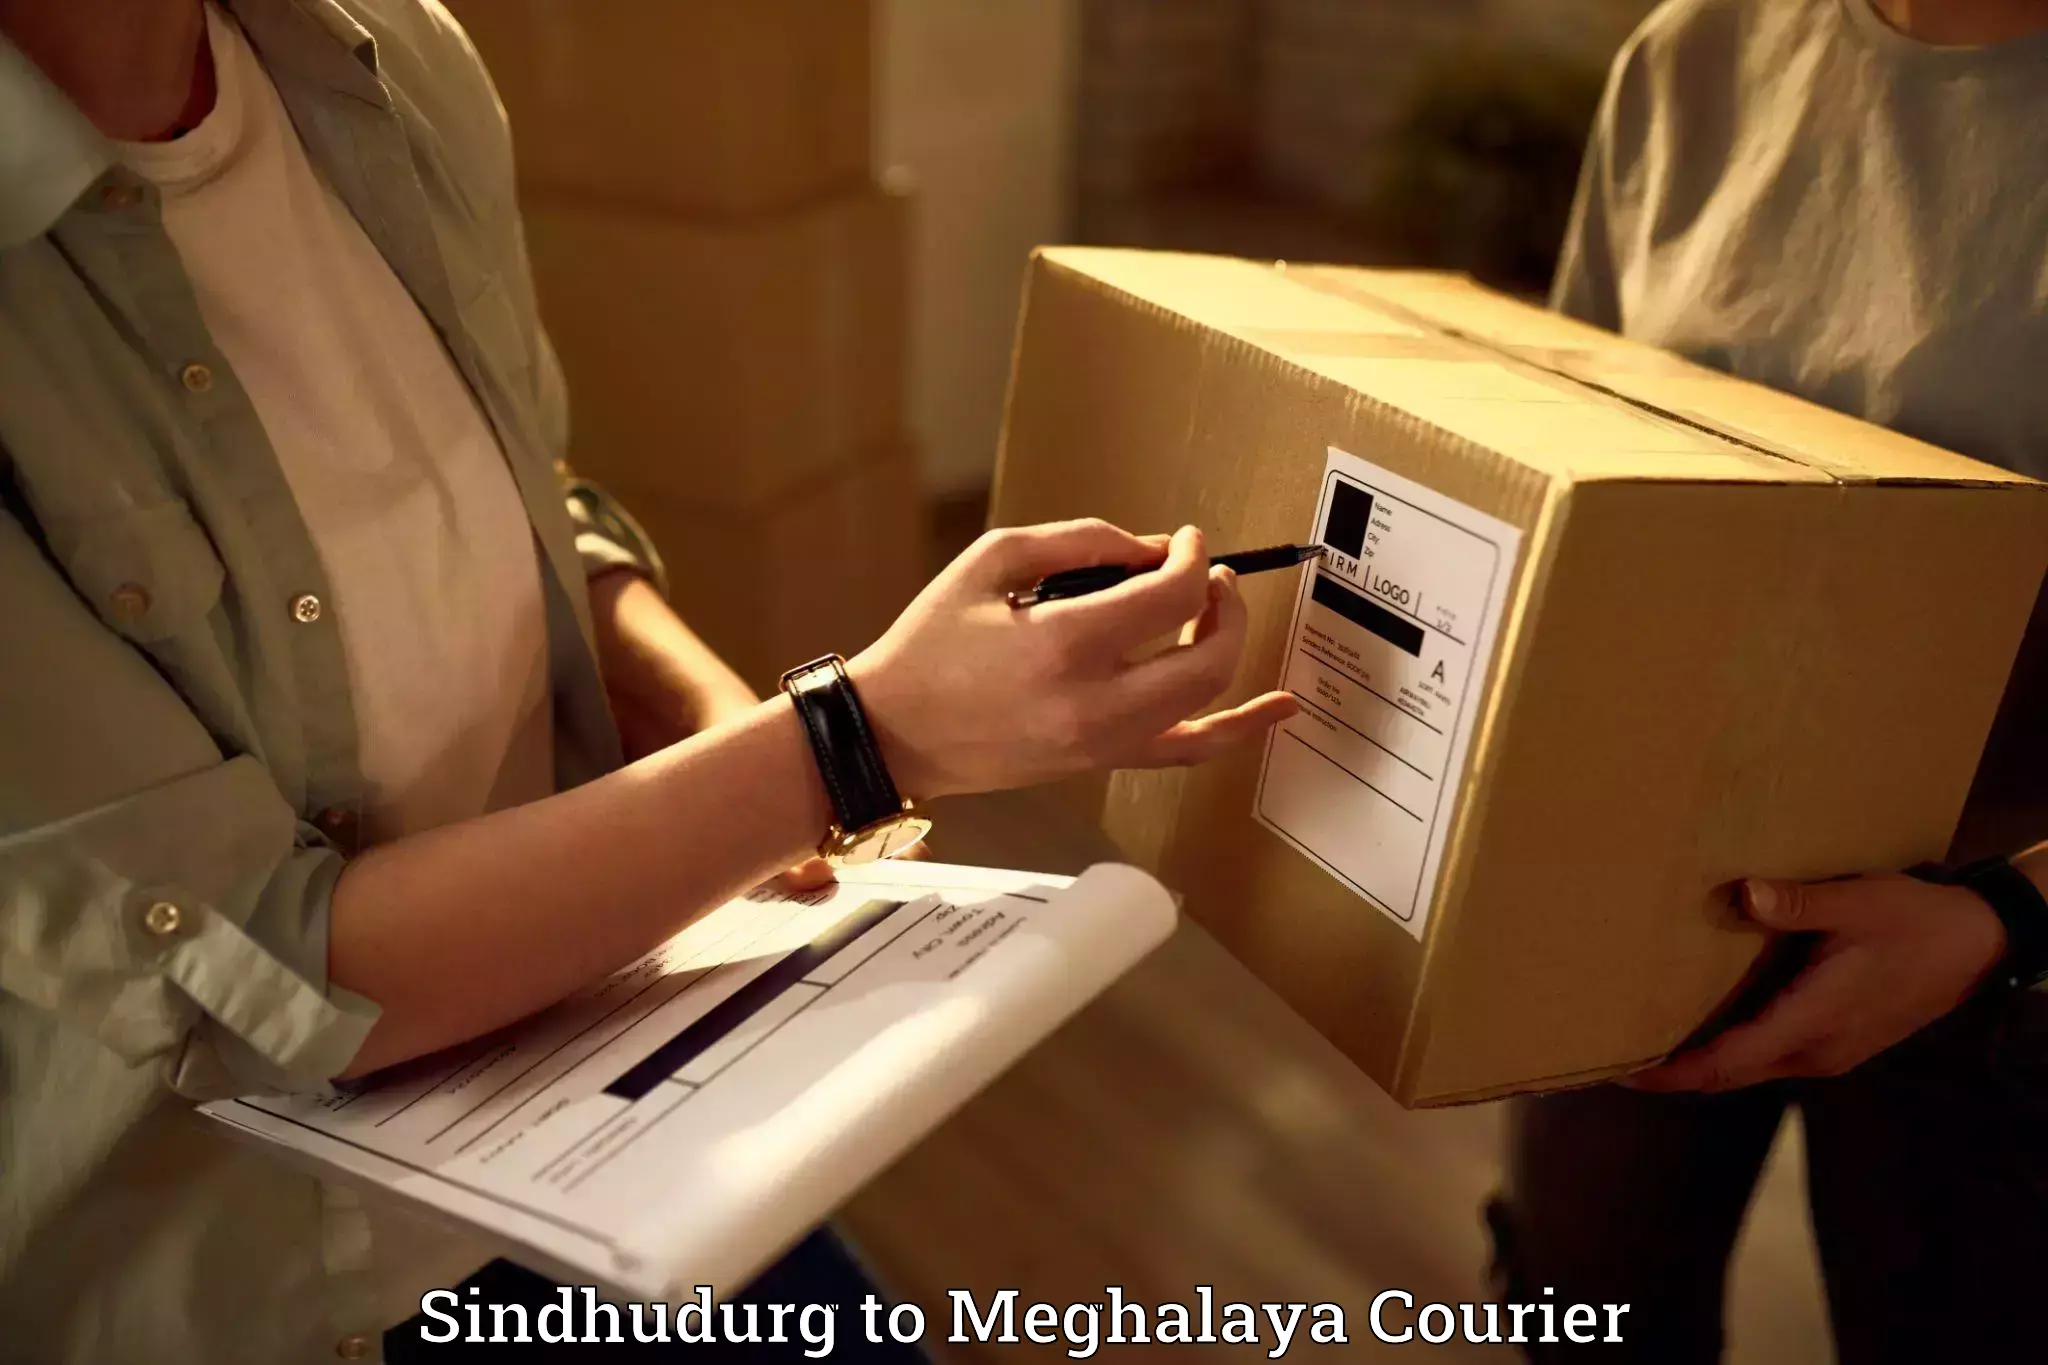 Furniture transport professionals Sindhudurg to Meghalaya